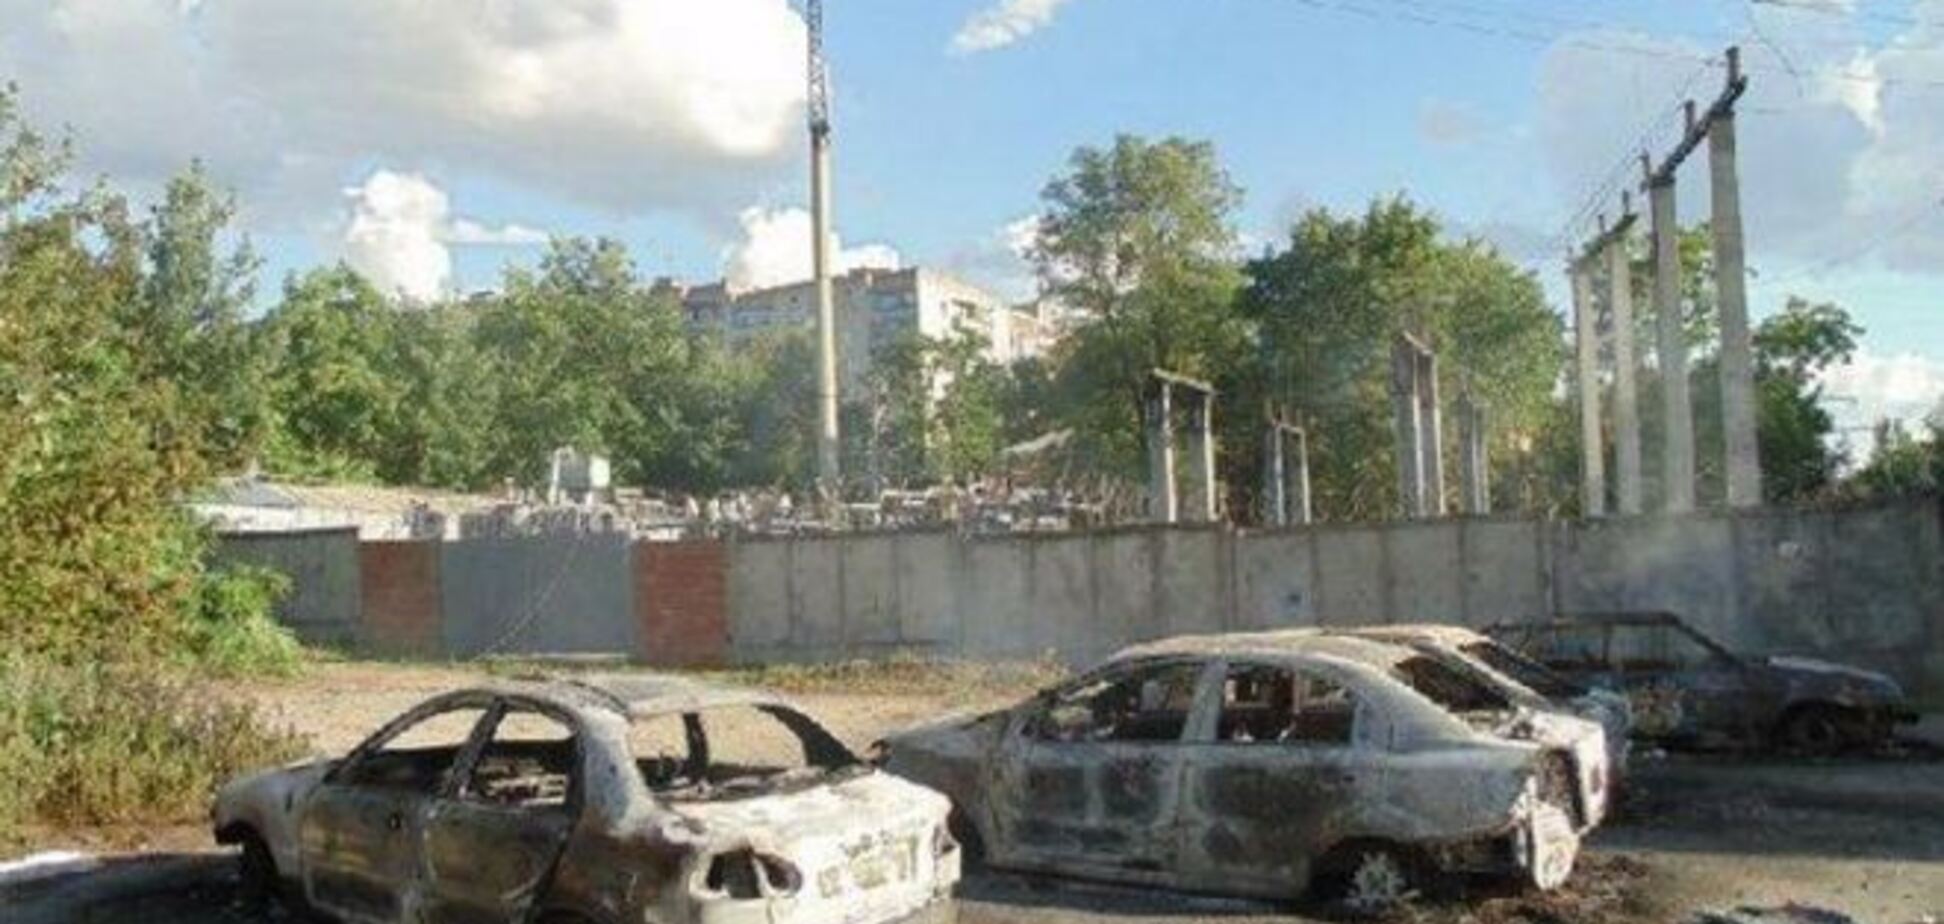 Краматорськ після боїв: спалені дотла авто і зруйновані балкони. Фотофакт